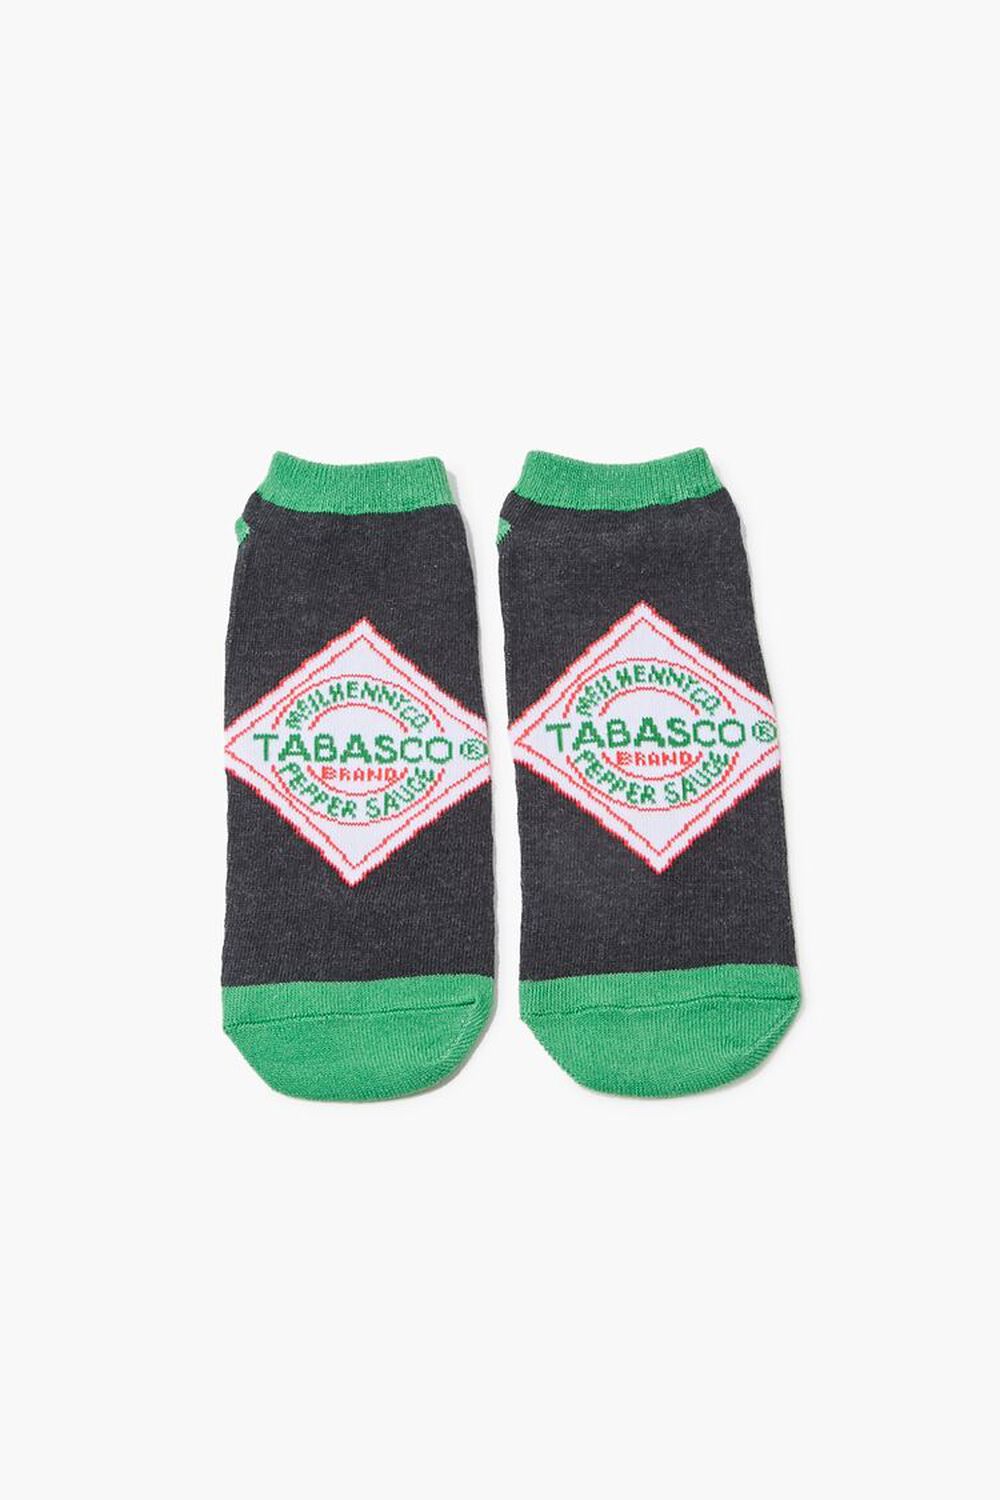 Tabasco Ankle Socks, image 2